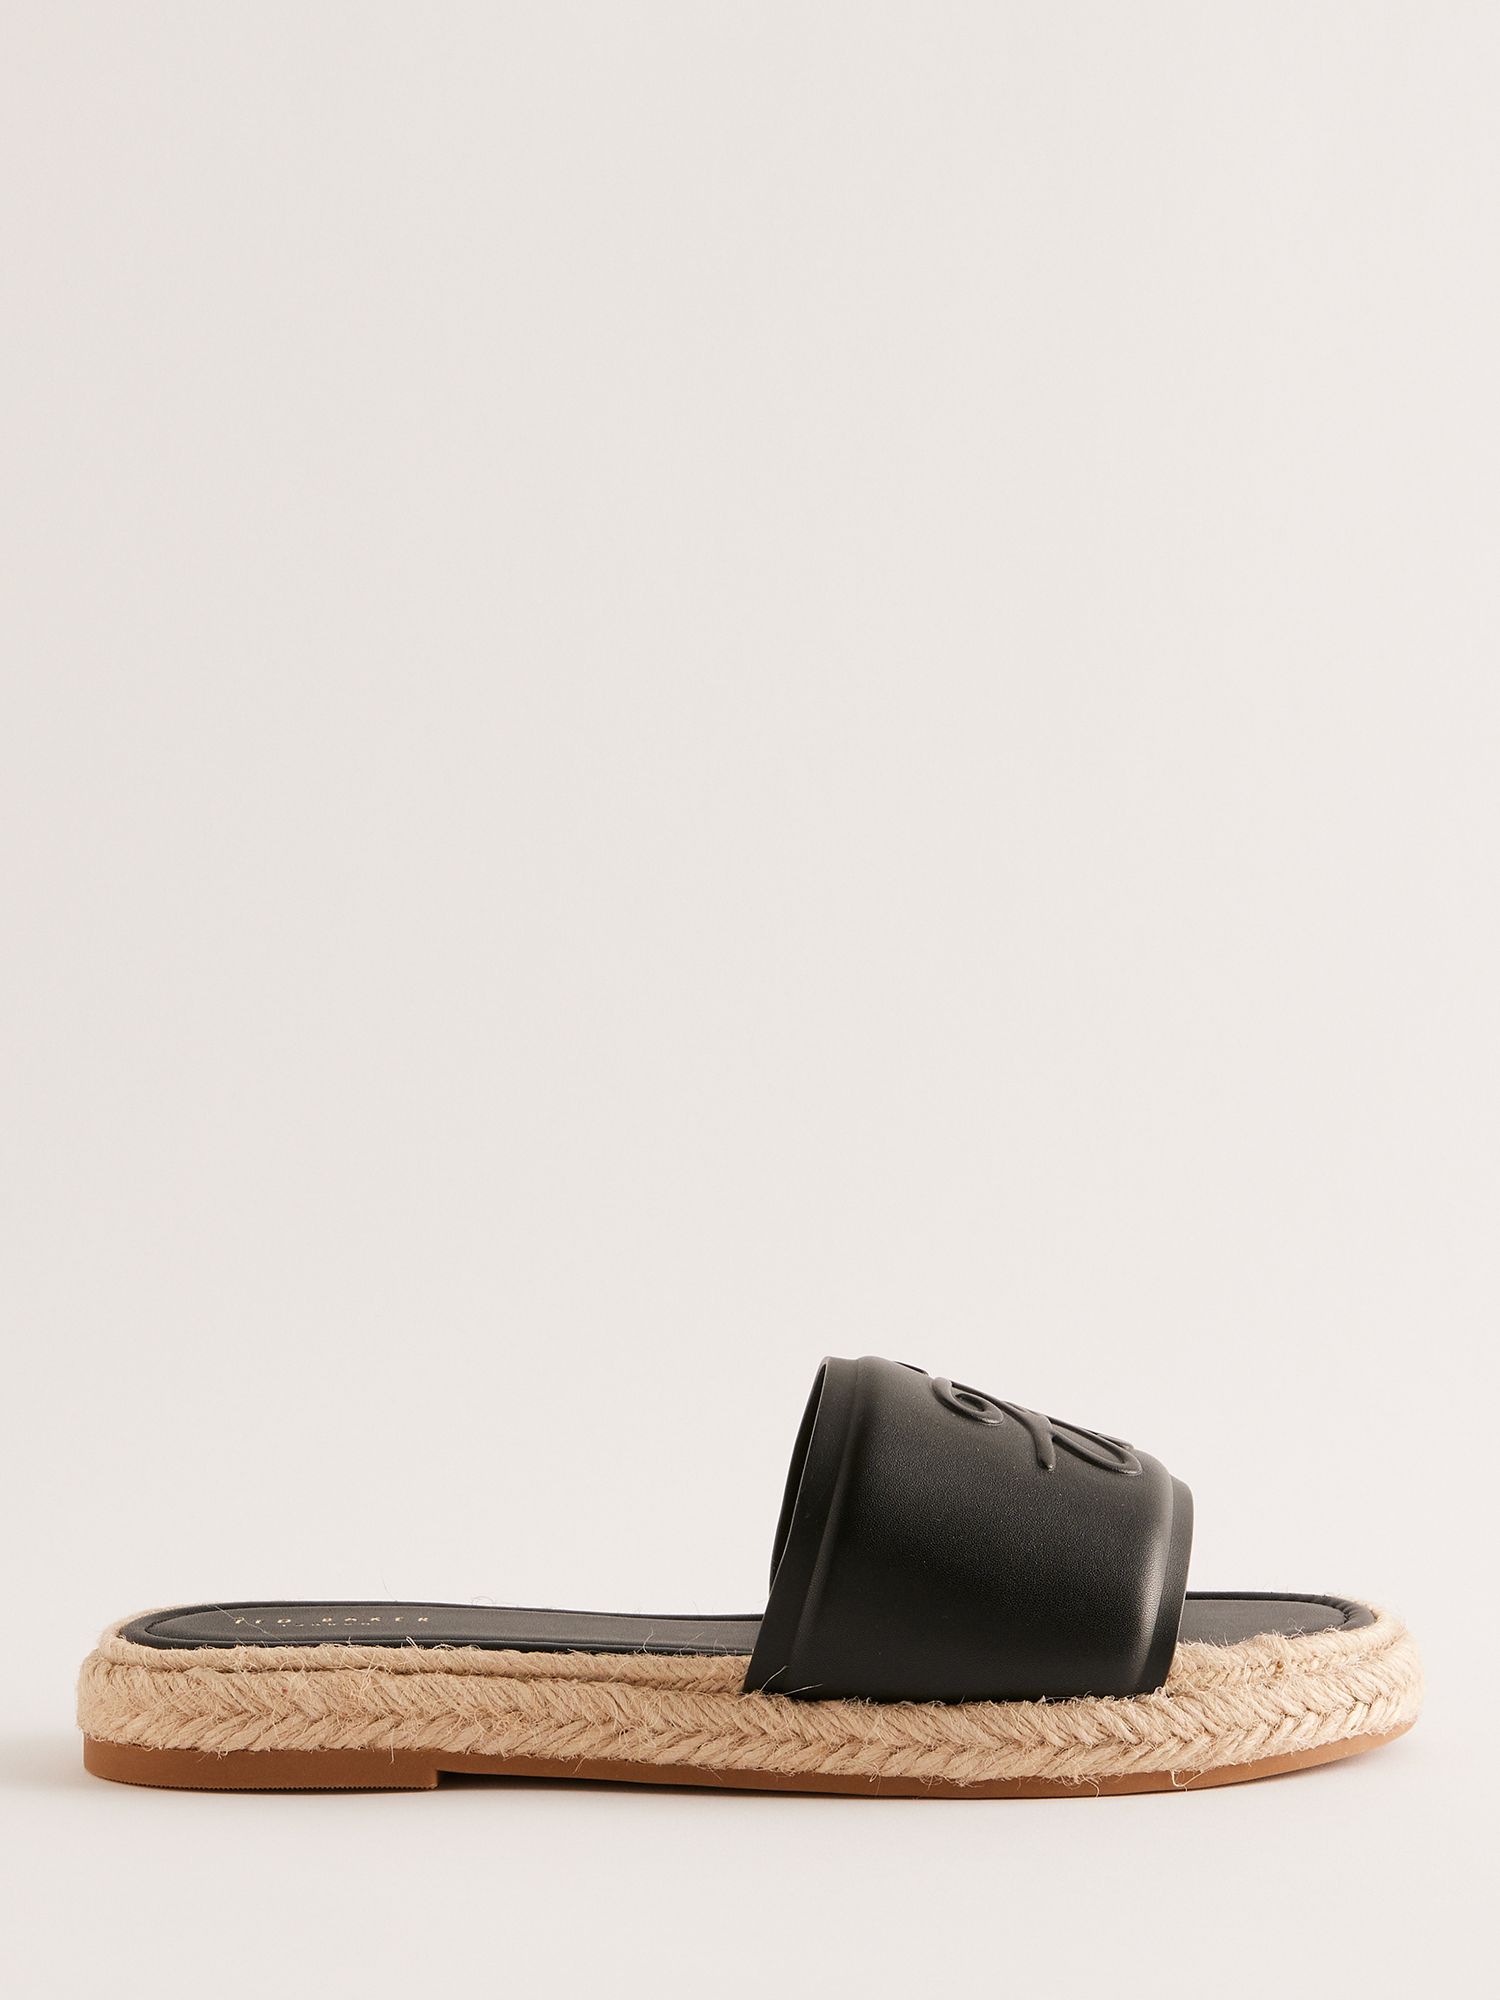 Ted Baker Portiya Leather Espadrille Slider Sandals, Black, EU39